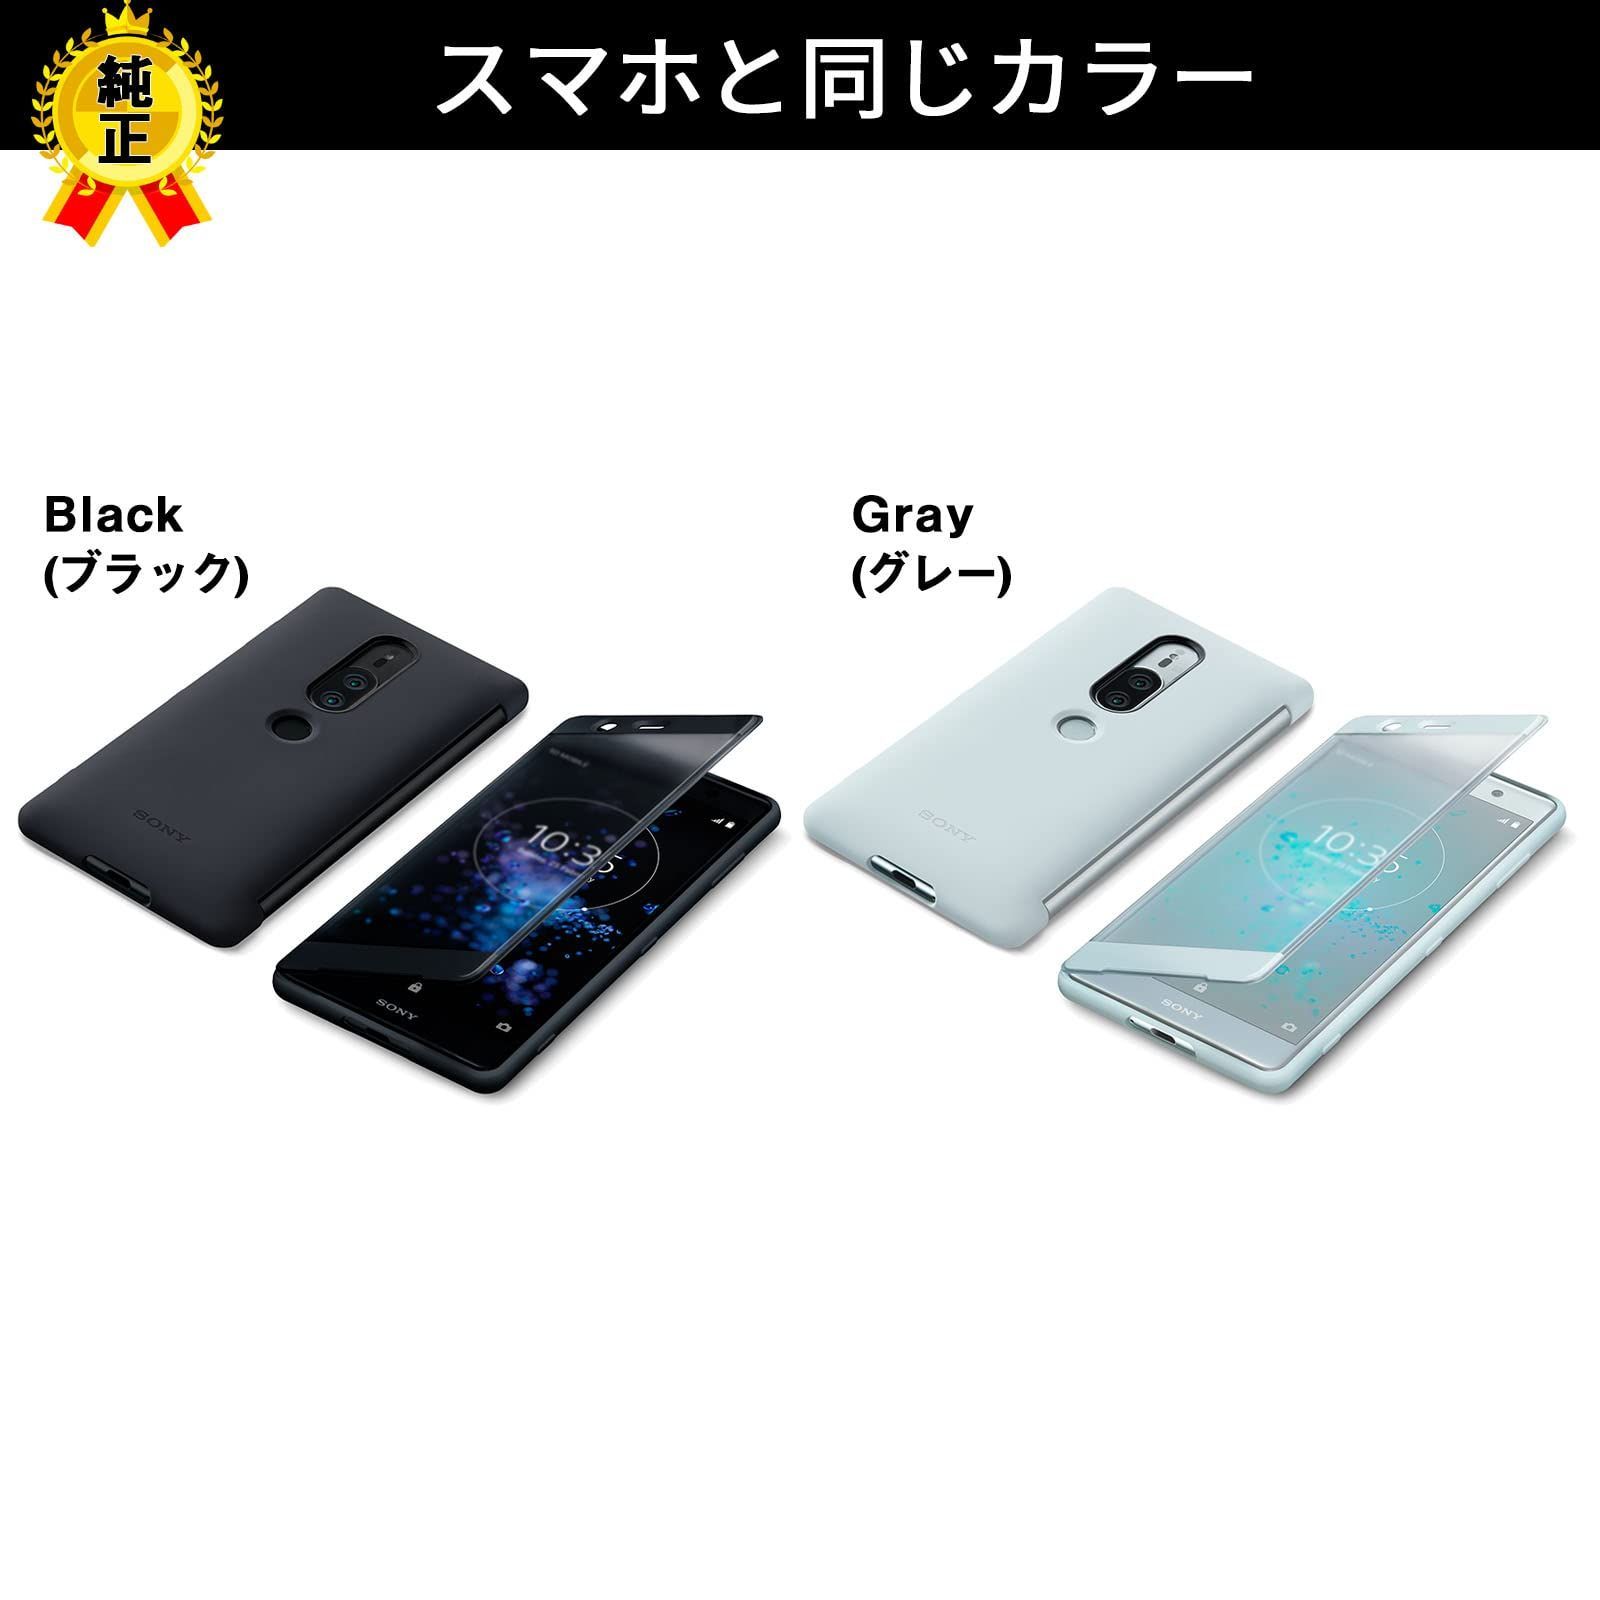 【人気商品】純正 ケース SONY Xperia XZ2 Premium ソニー エクスペリア プレミアム 手帳型 カバー スマホ ケース ブラック 黒 Black Style Cover Touch SCTH30JP/B SO-04K SOV38